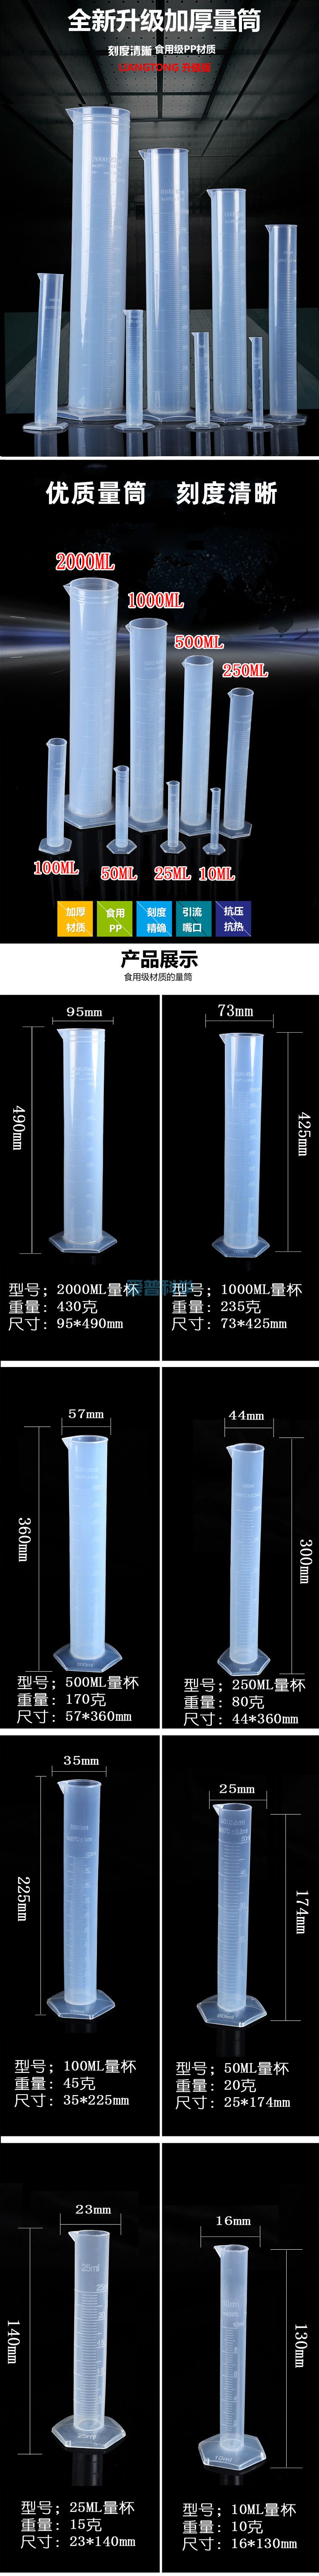 250ml六角塑料量筒,PP,耐高温防腐蚀(图1)